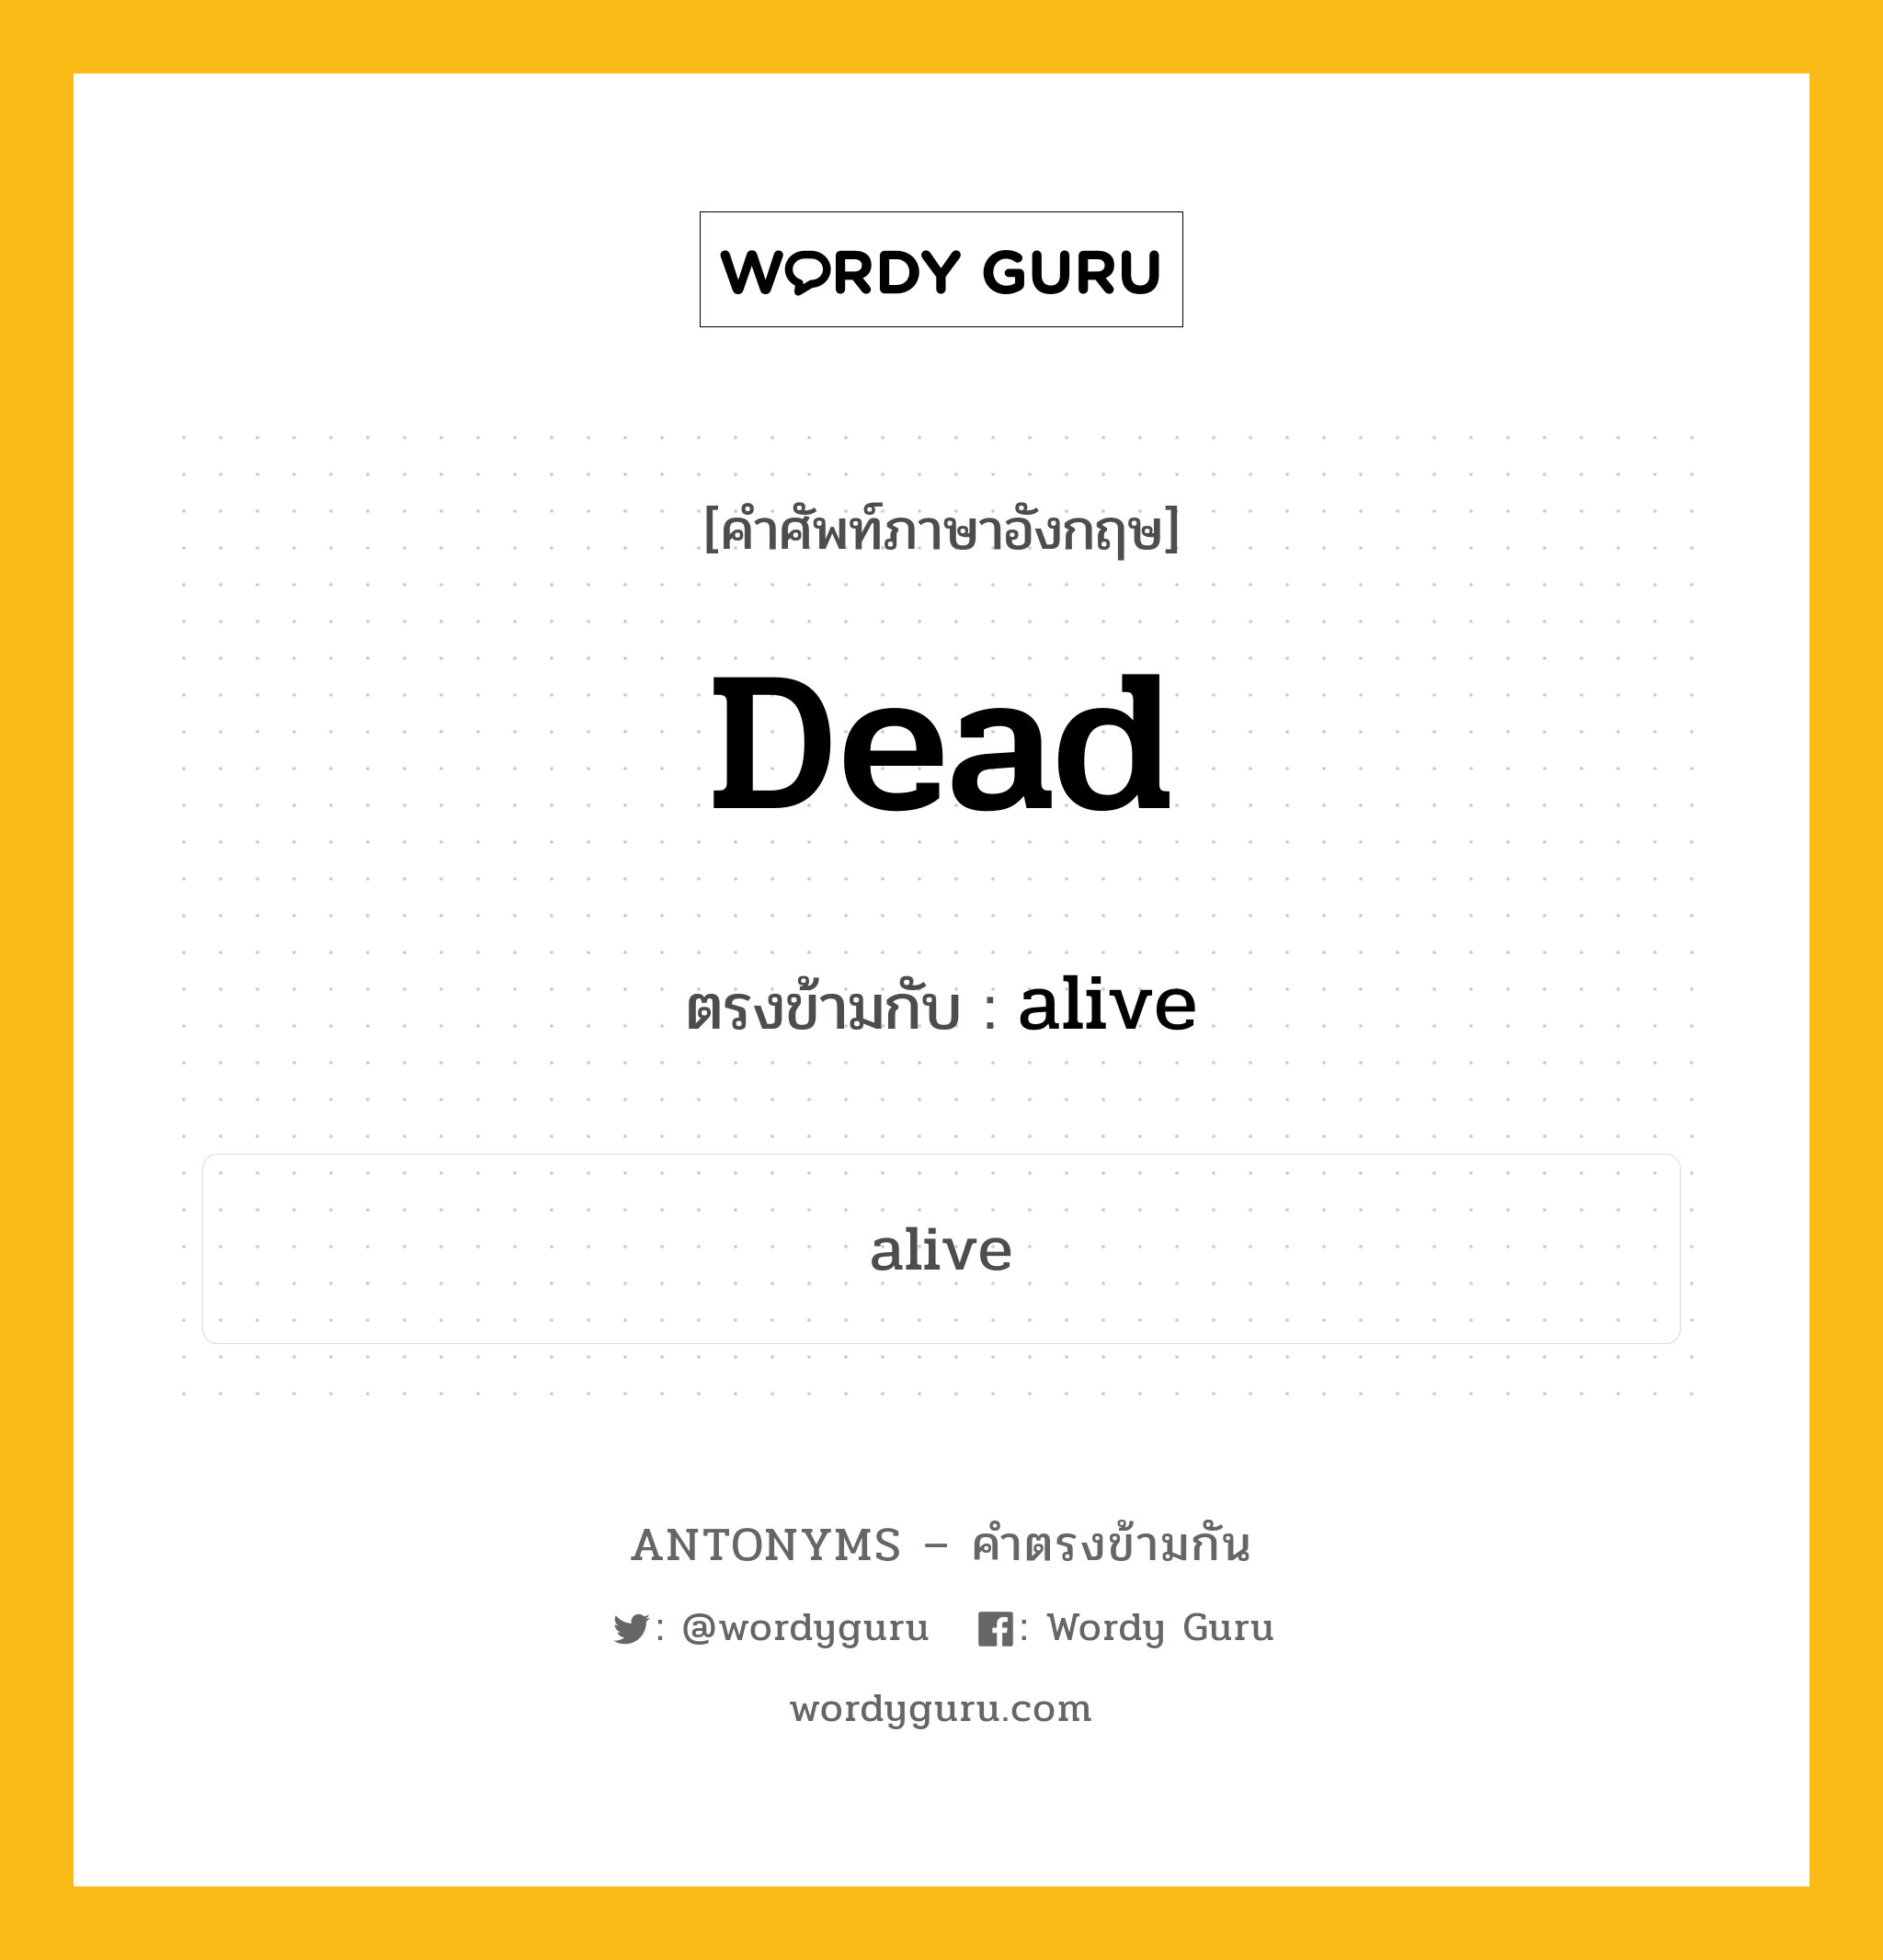 dead เป็นคำตรงข้ามกับคำไหนบ้าง?, คำศัพท์ภาษาอังกฤษ dead ตรงข้ามกับ alive หมวด alive